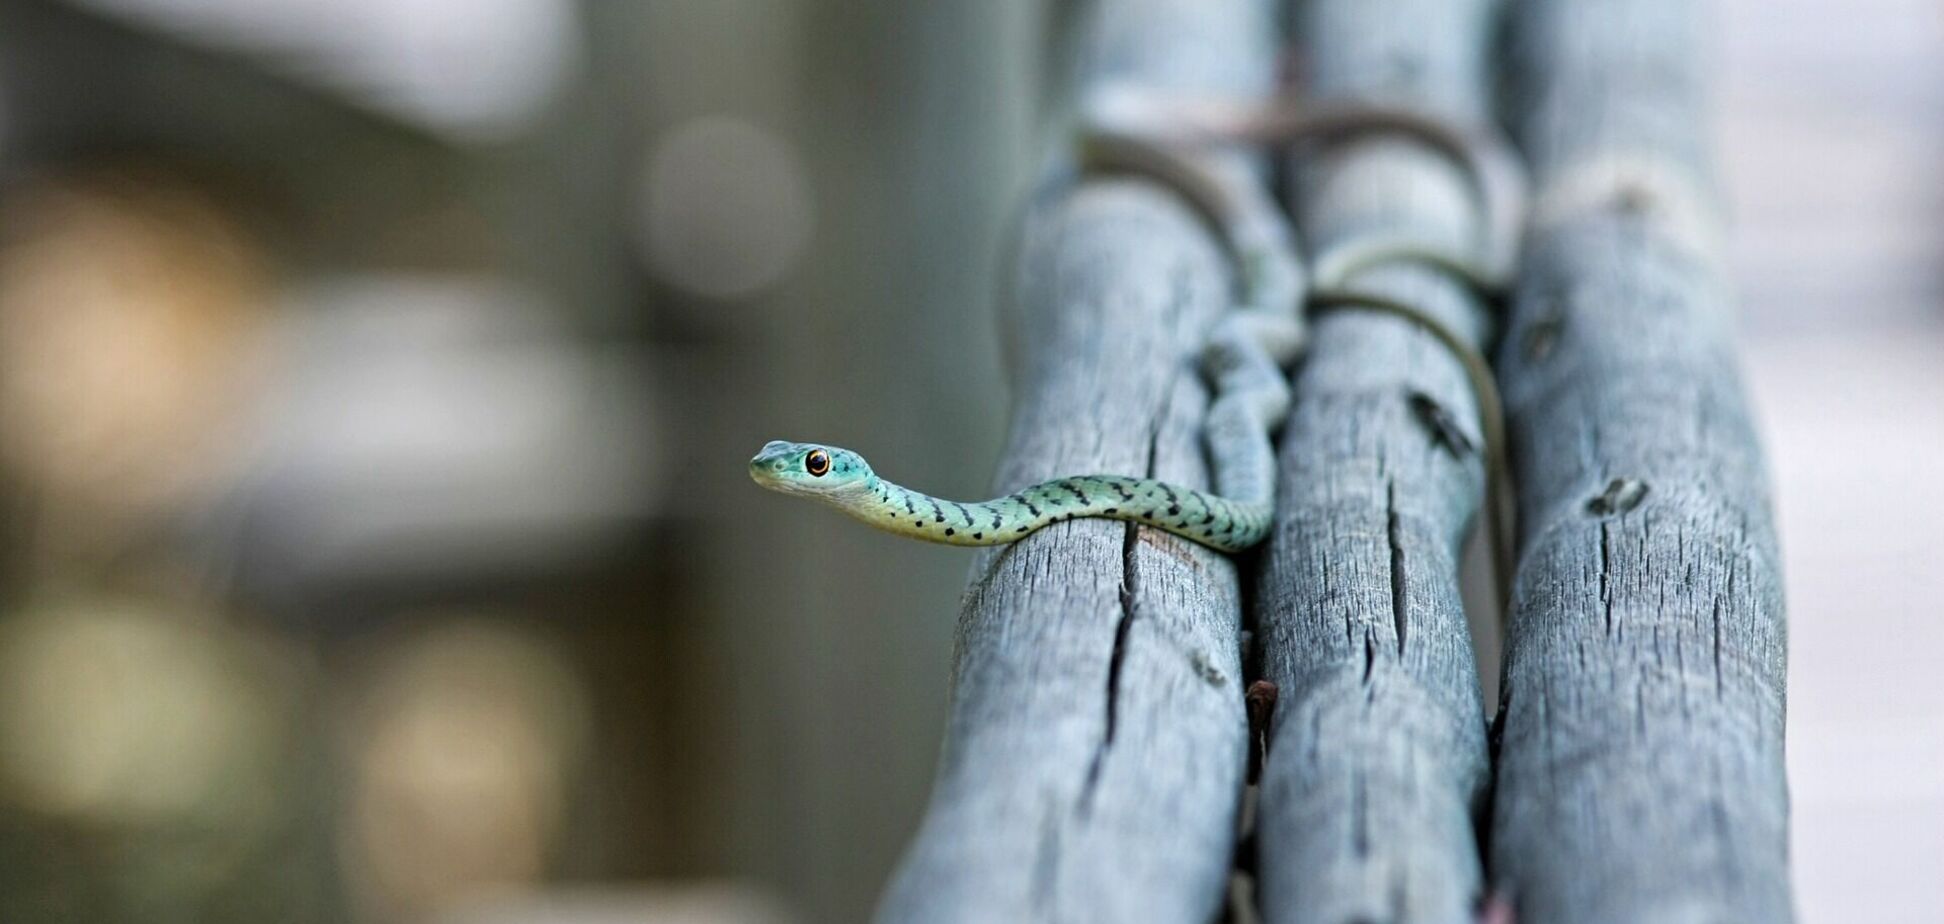 Уникальное фото со змеей озадачило пользователей в сети